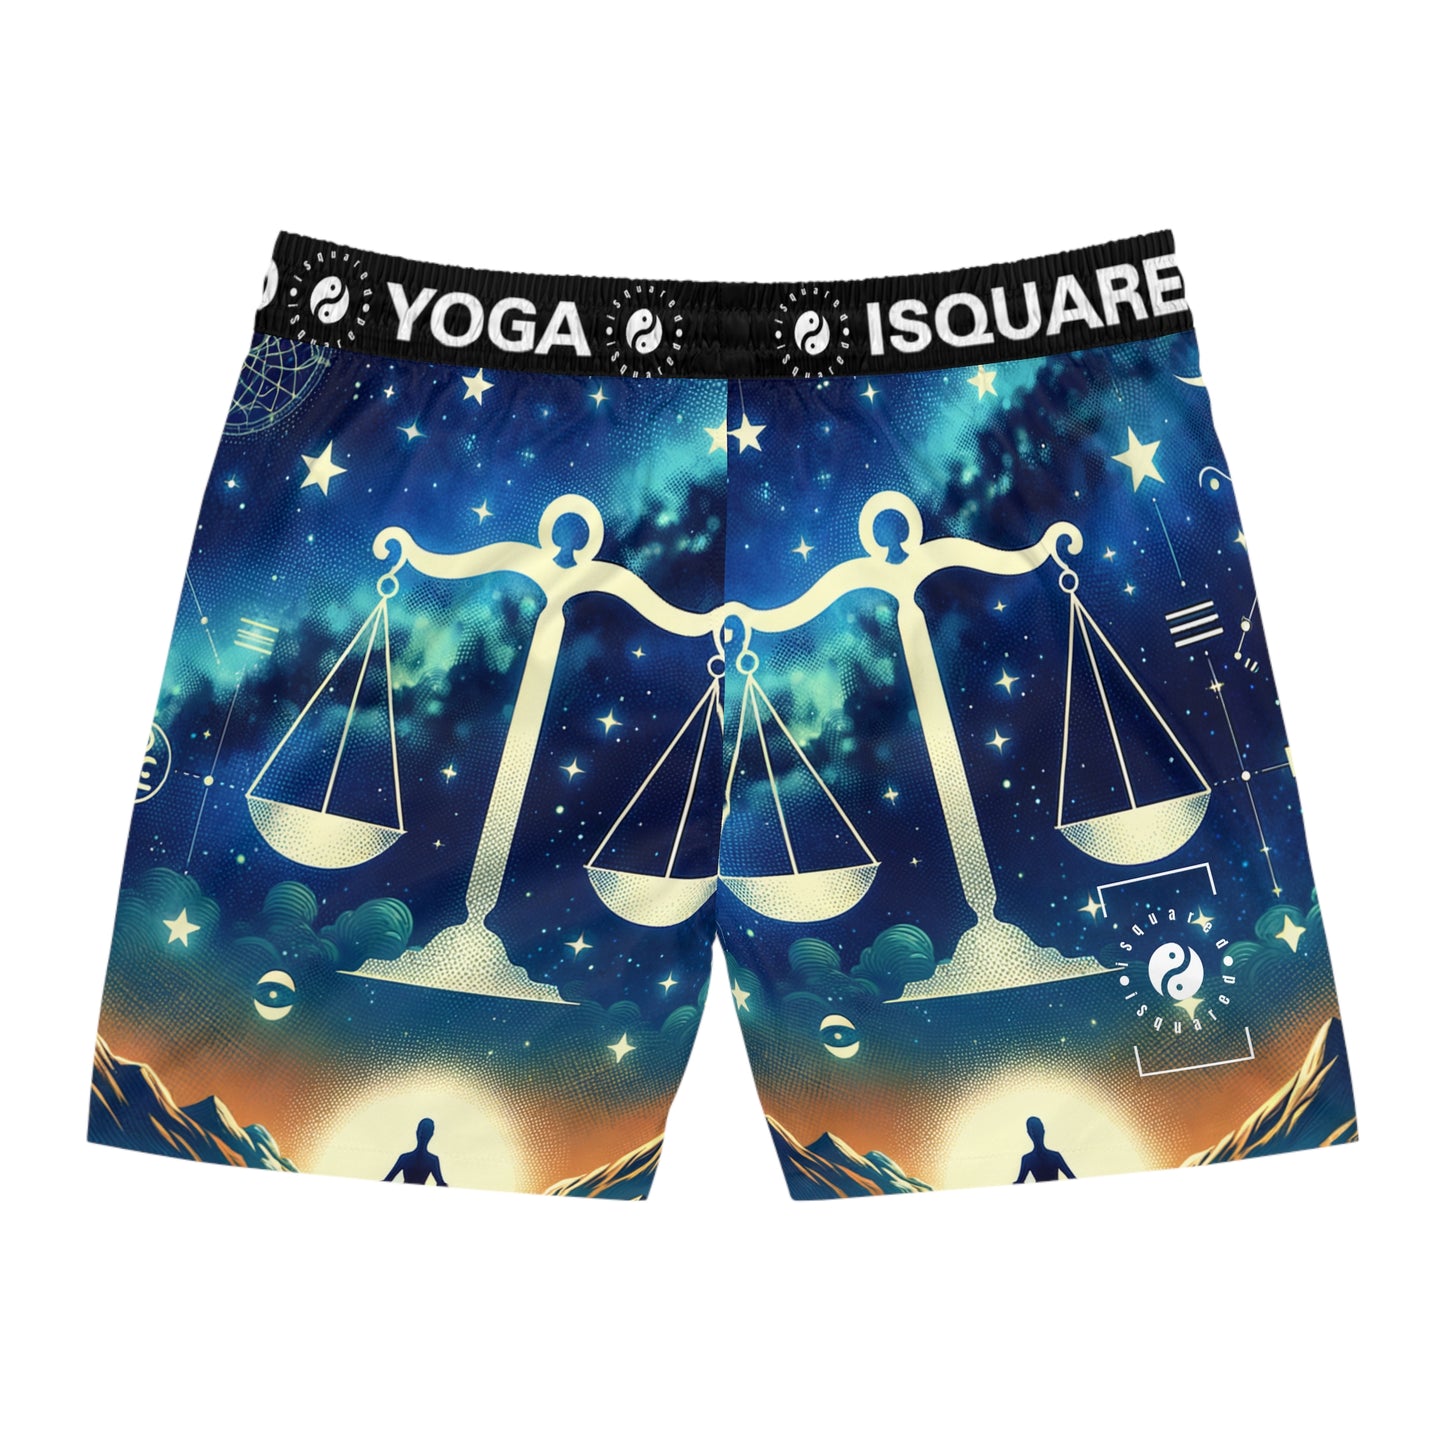 Celestial Libra - Swim Shorts (Mid-Length) for Men